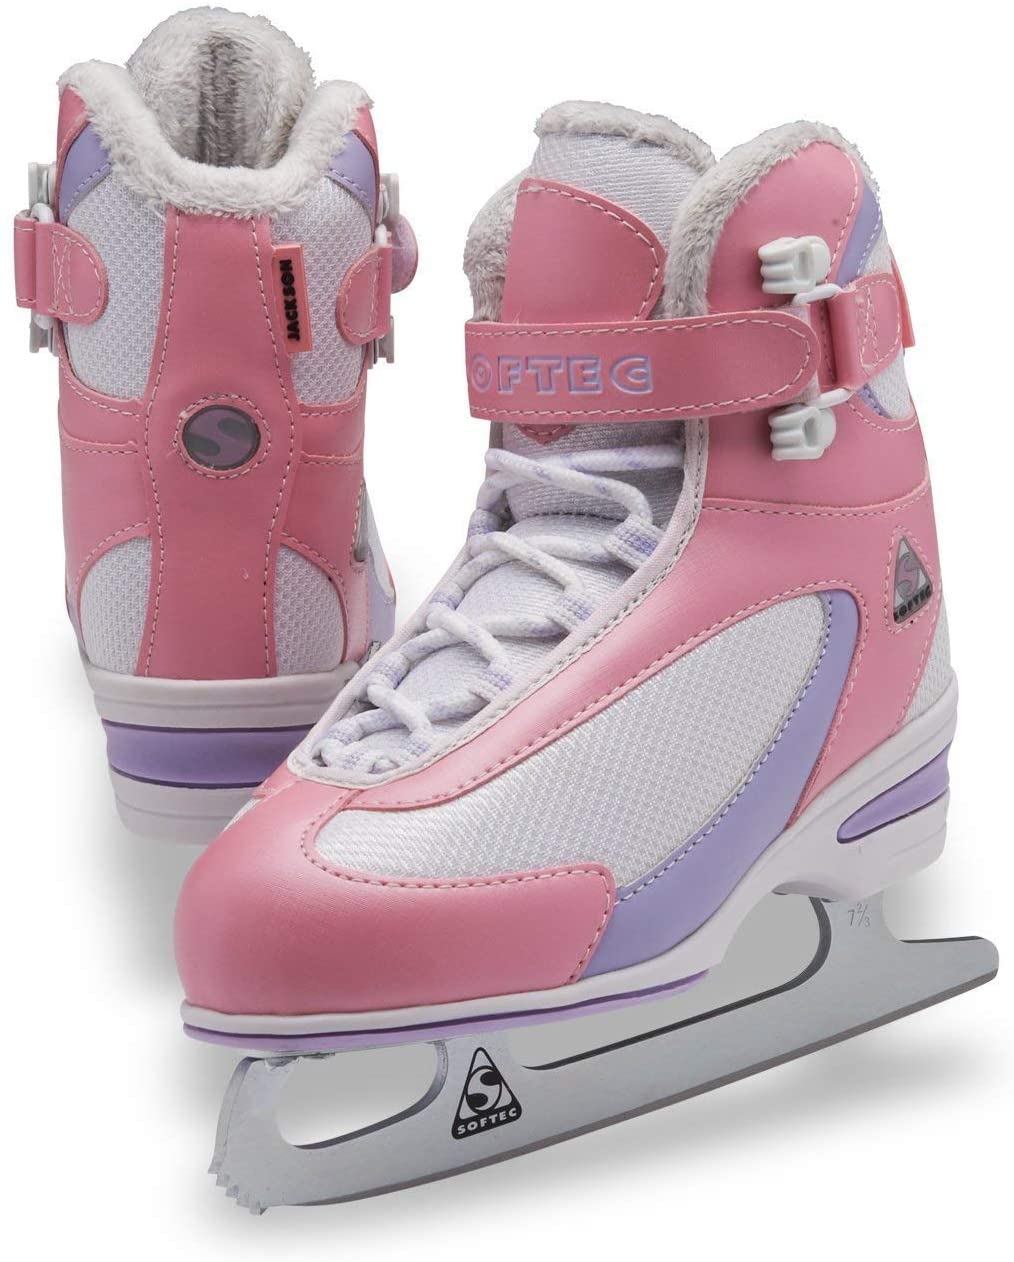 Jackson Ultima Softec Figure Toddler Ice Skates